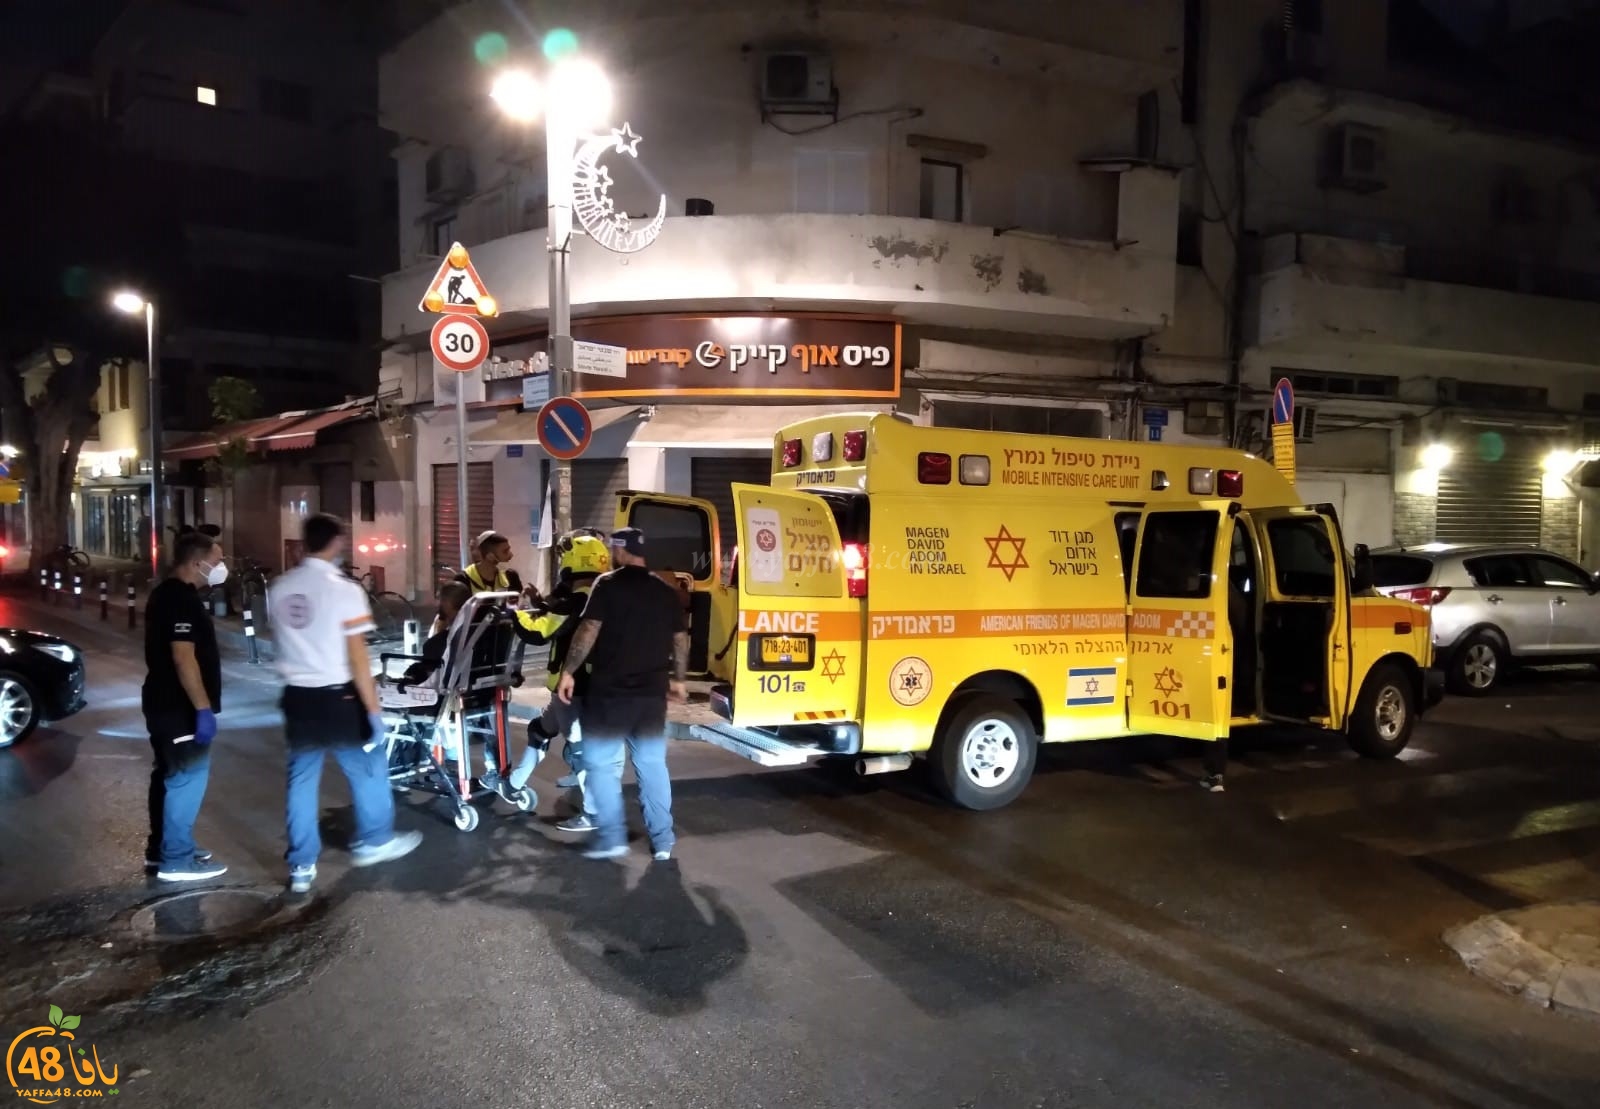  يافا: اصابة متوسطة لشاب باطلاق نار بعد منتصف الليلة